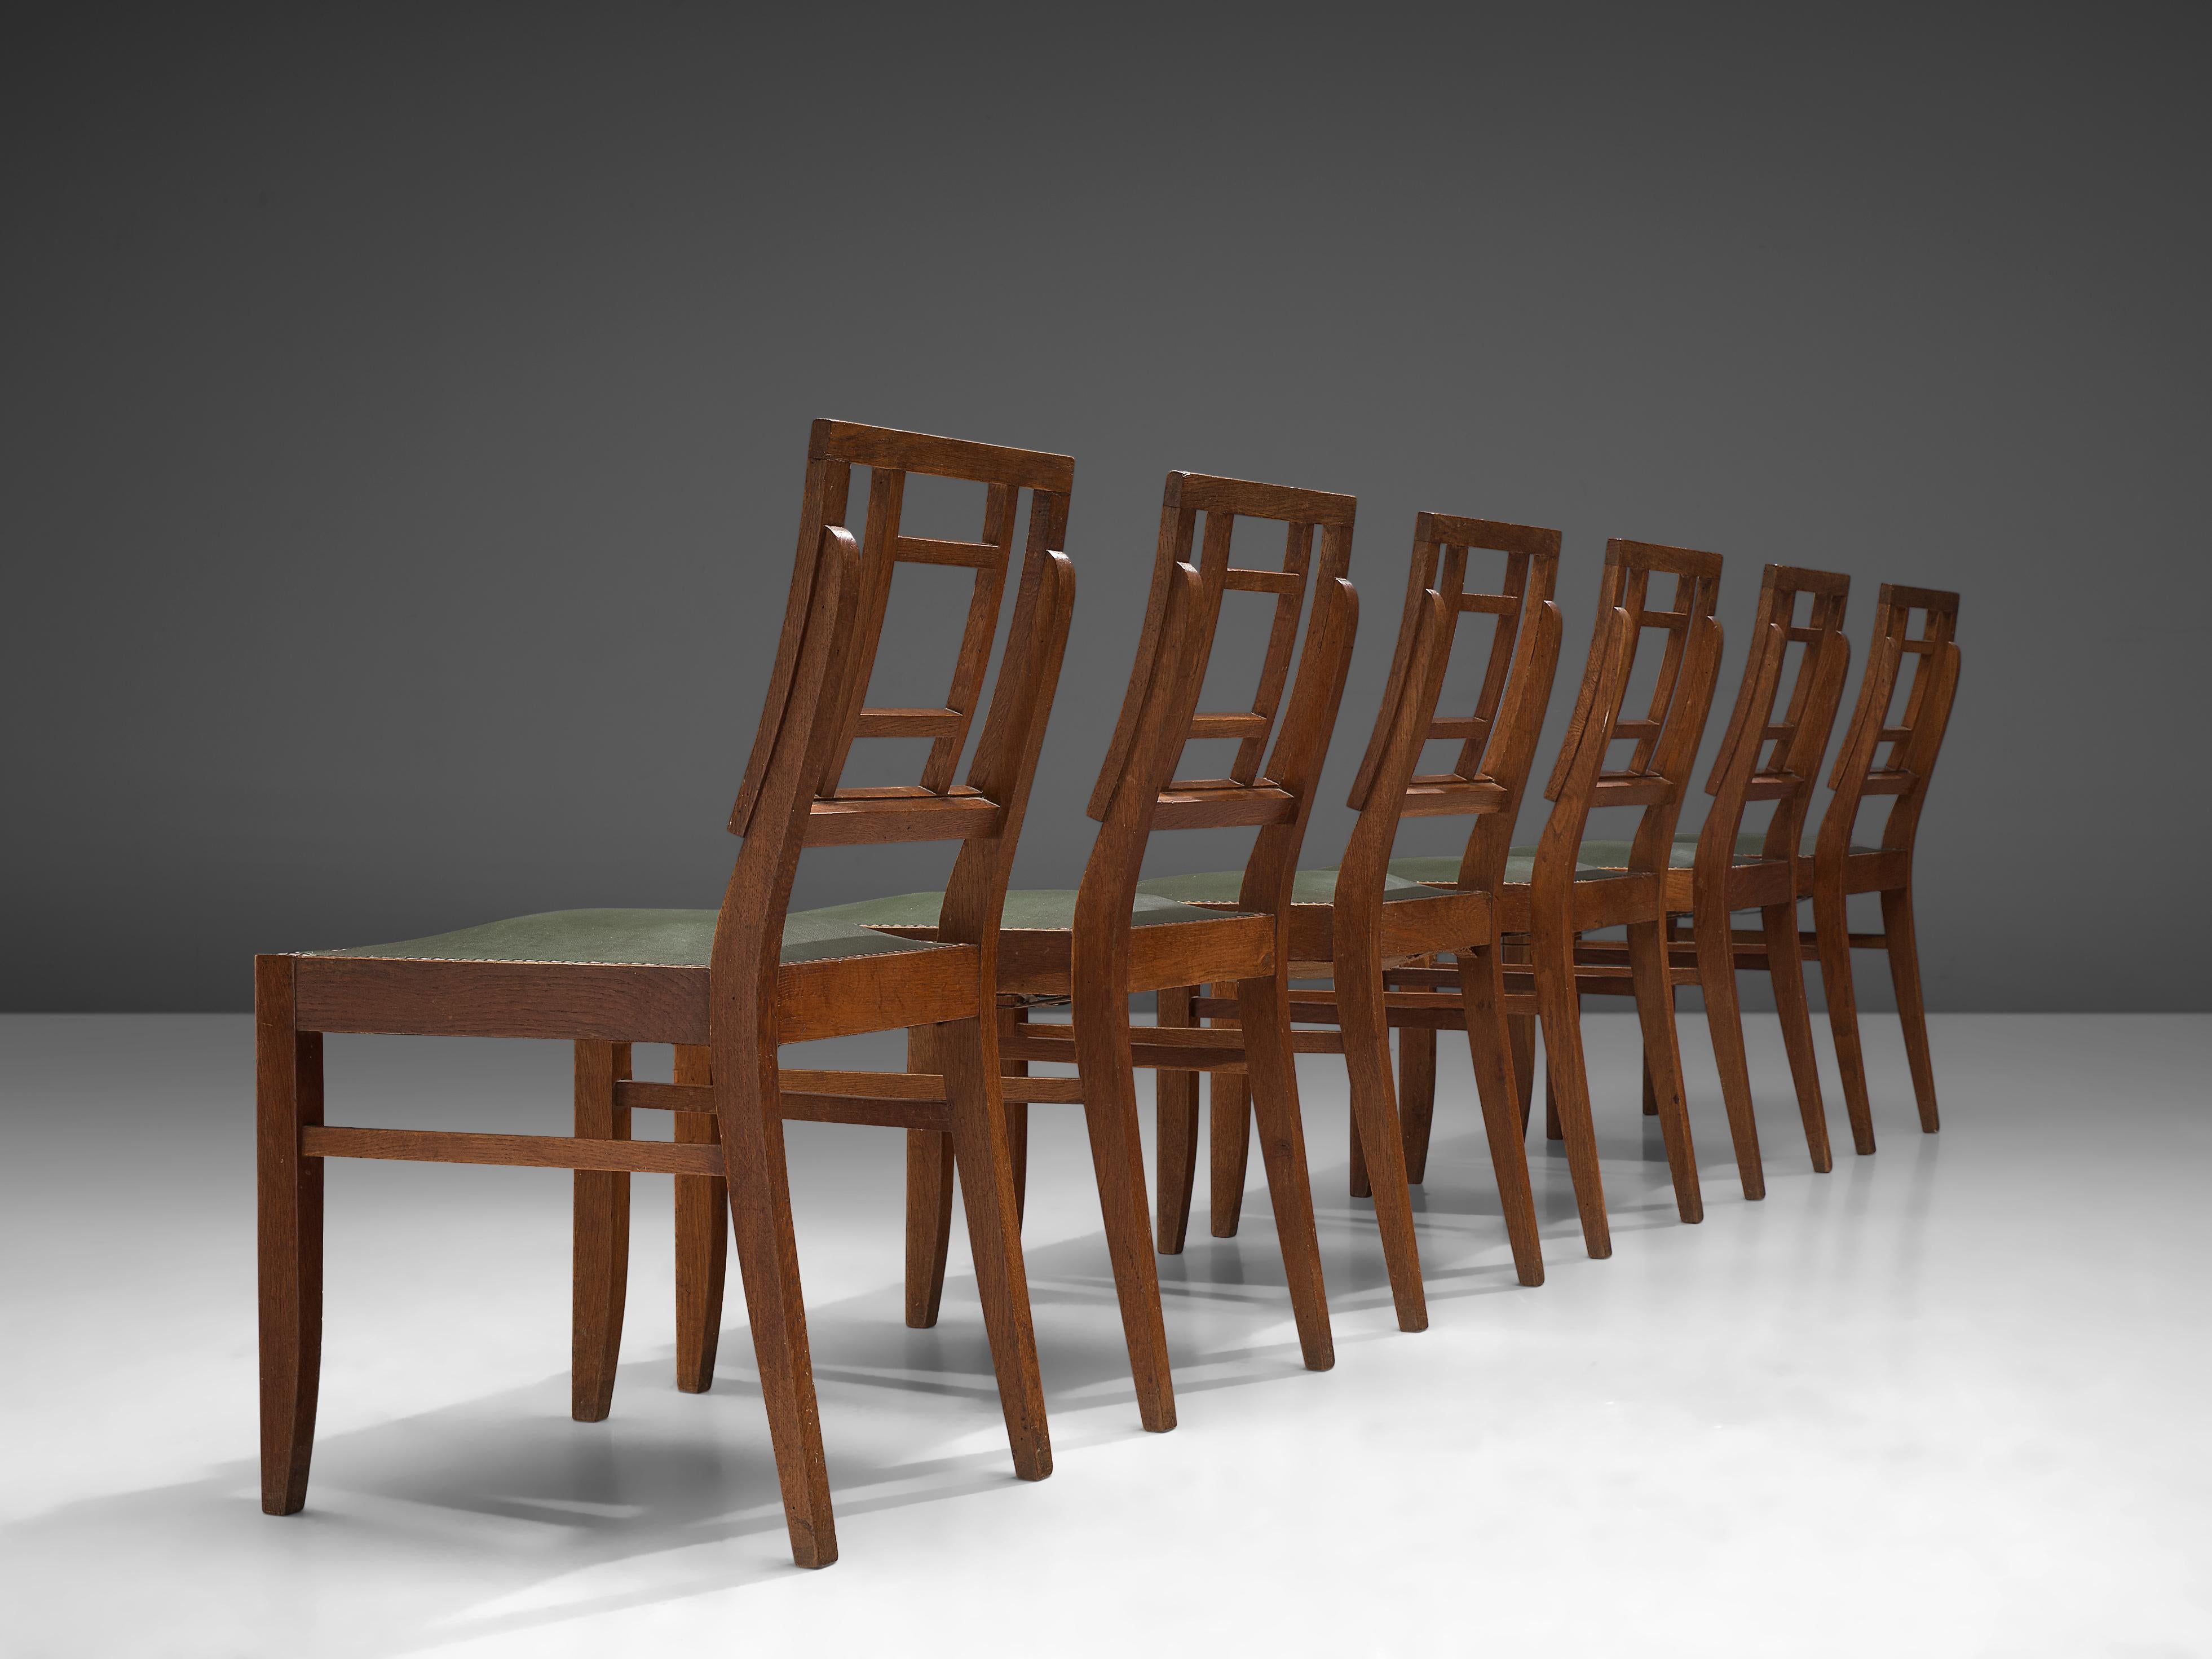 Ensemble de six chaises de salle à manger, chêne, métal, faux cuir, France, années 1940

Cet ensemble de chaises de salle à manger françaises présente un design basique, avec des proportions fortes. Le dossier géométrique est une caractéristique